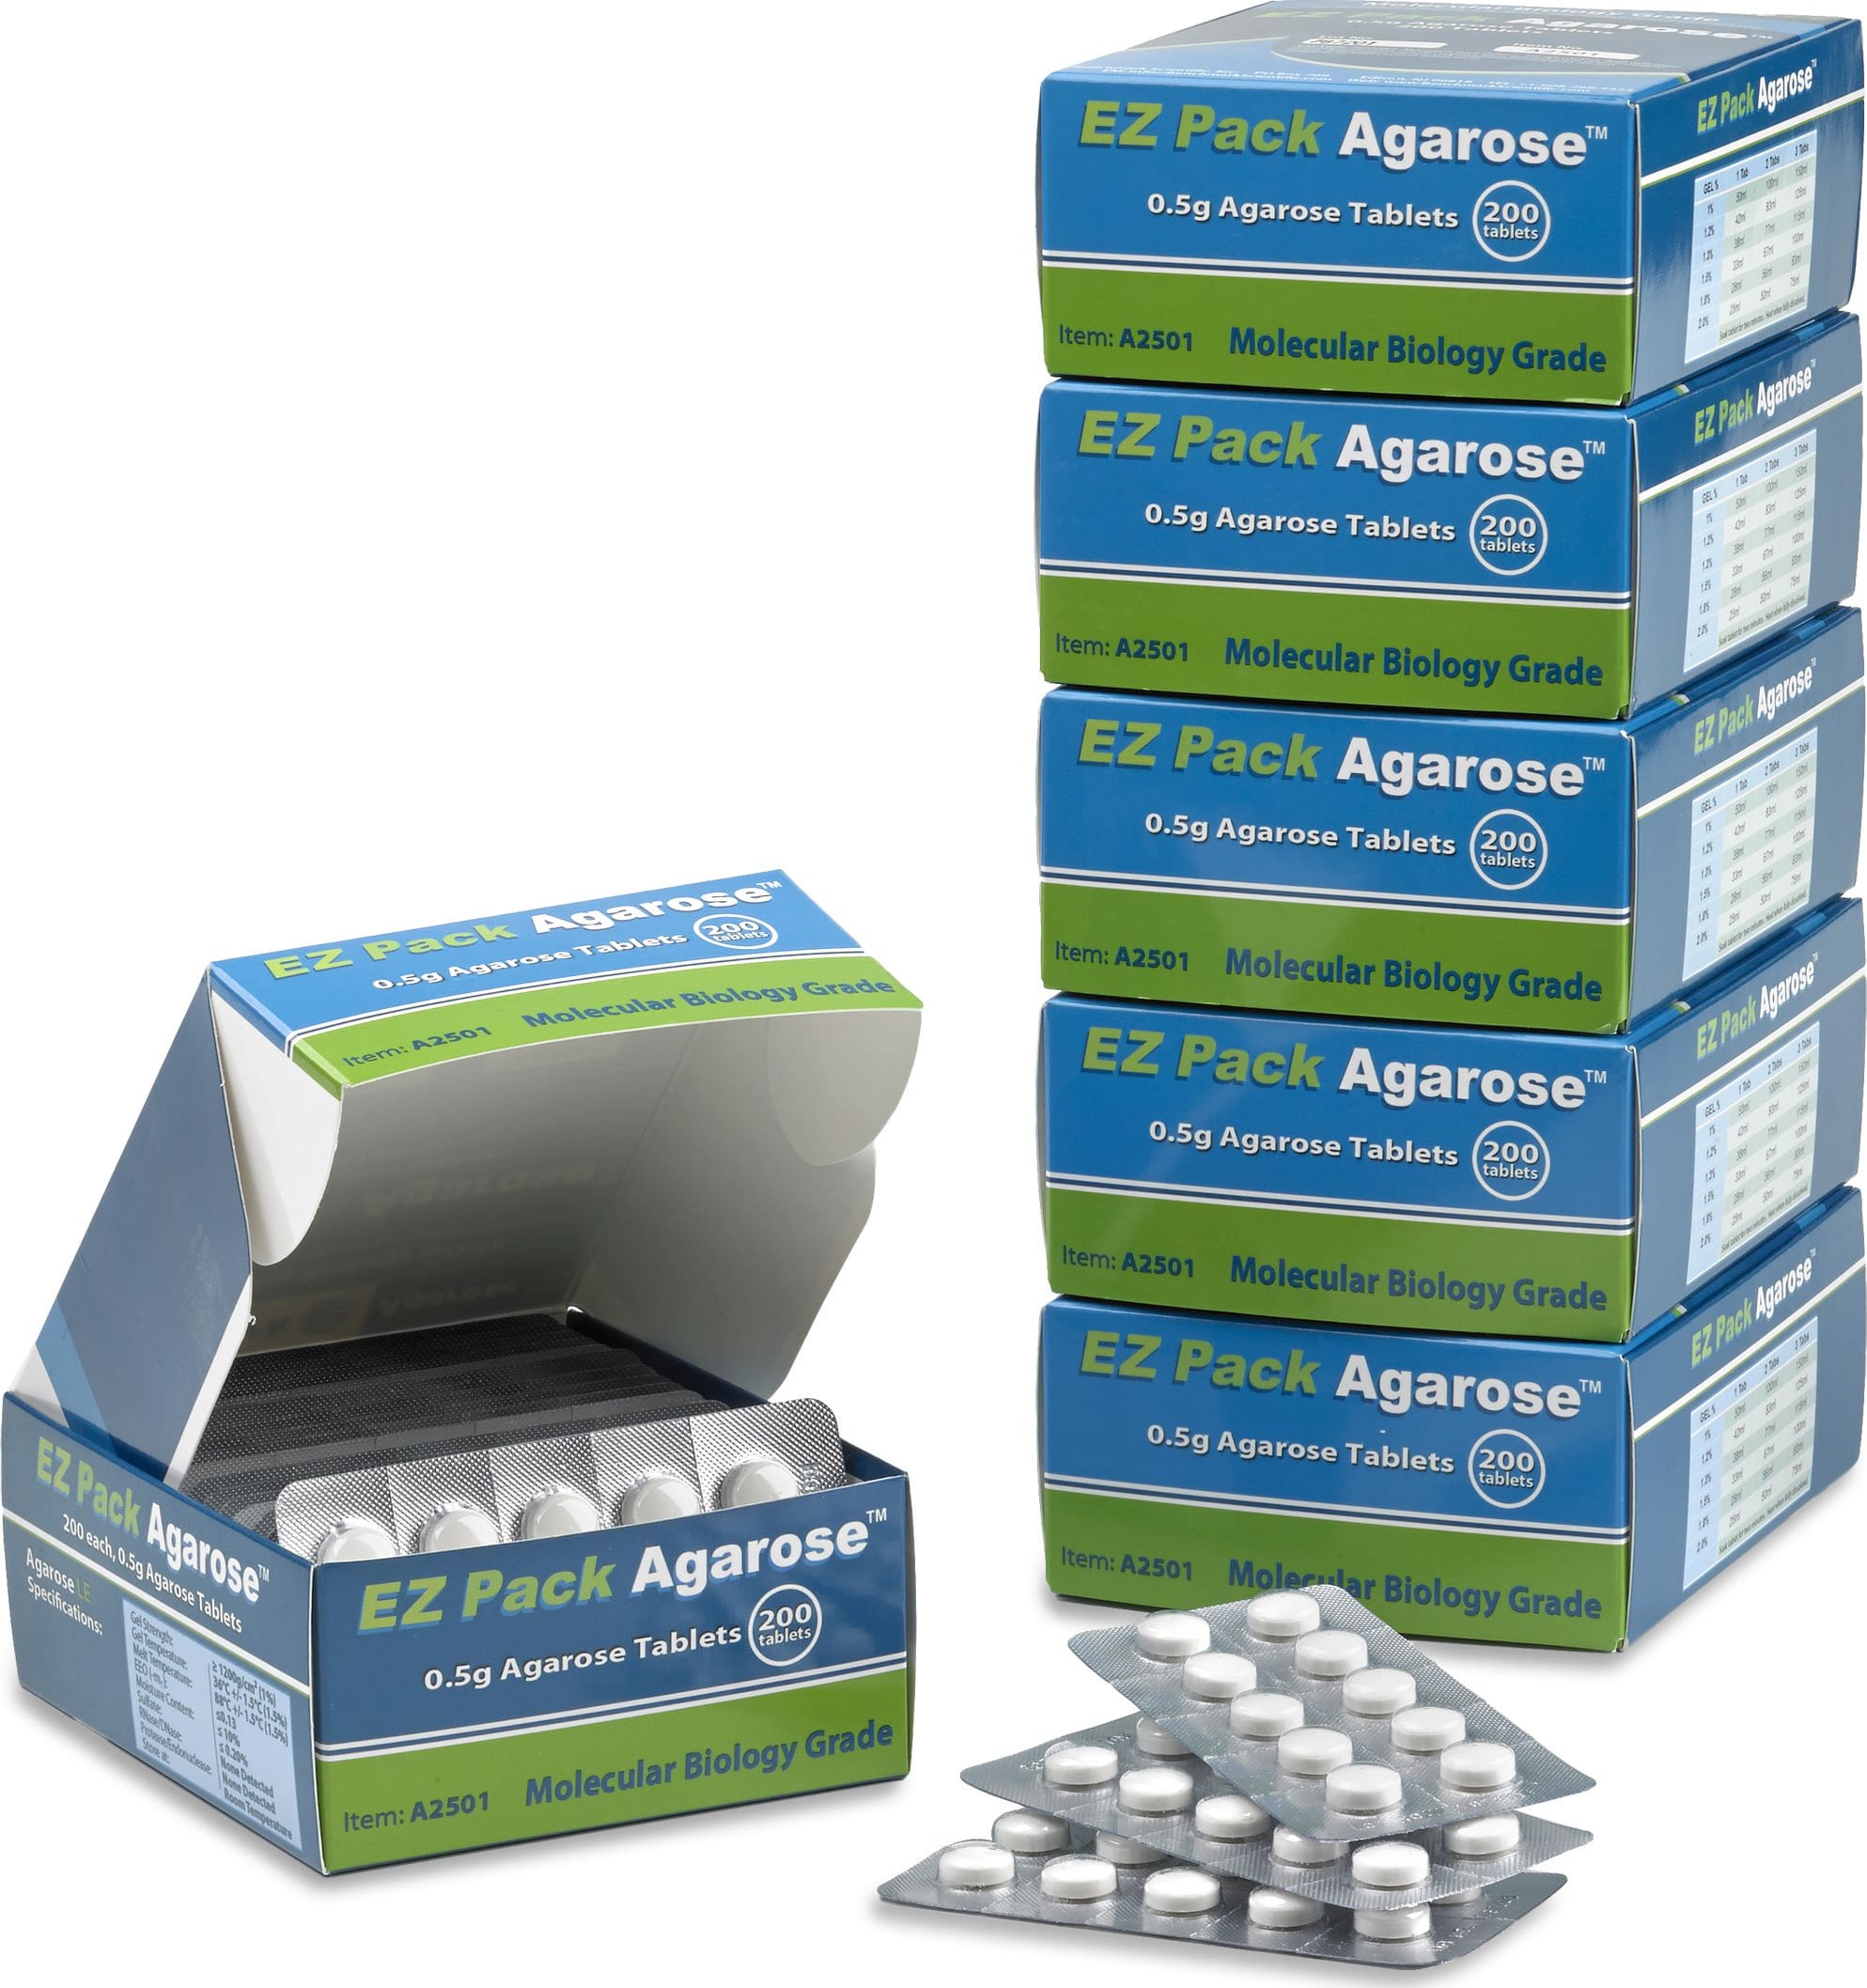 Benchmark A2501 EZ Pack Agarose Tablets, pack of 200 tablets (100g)